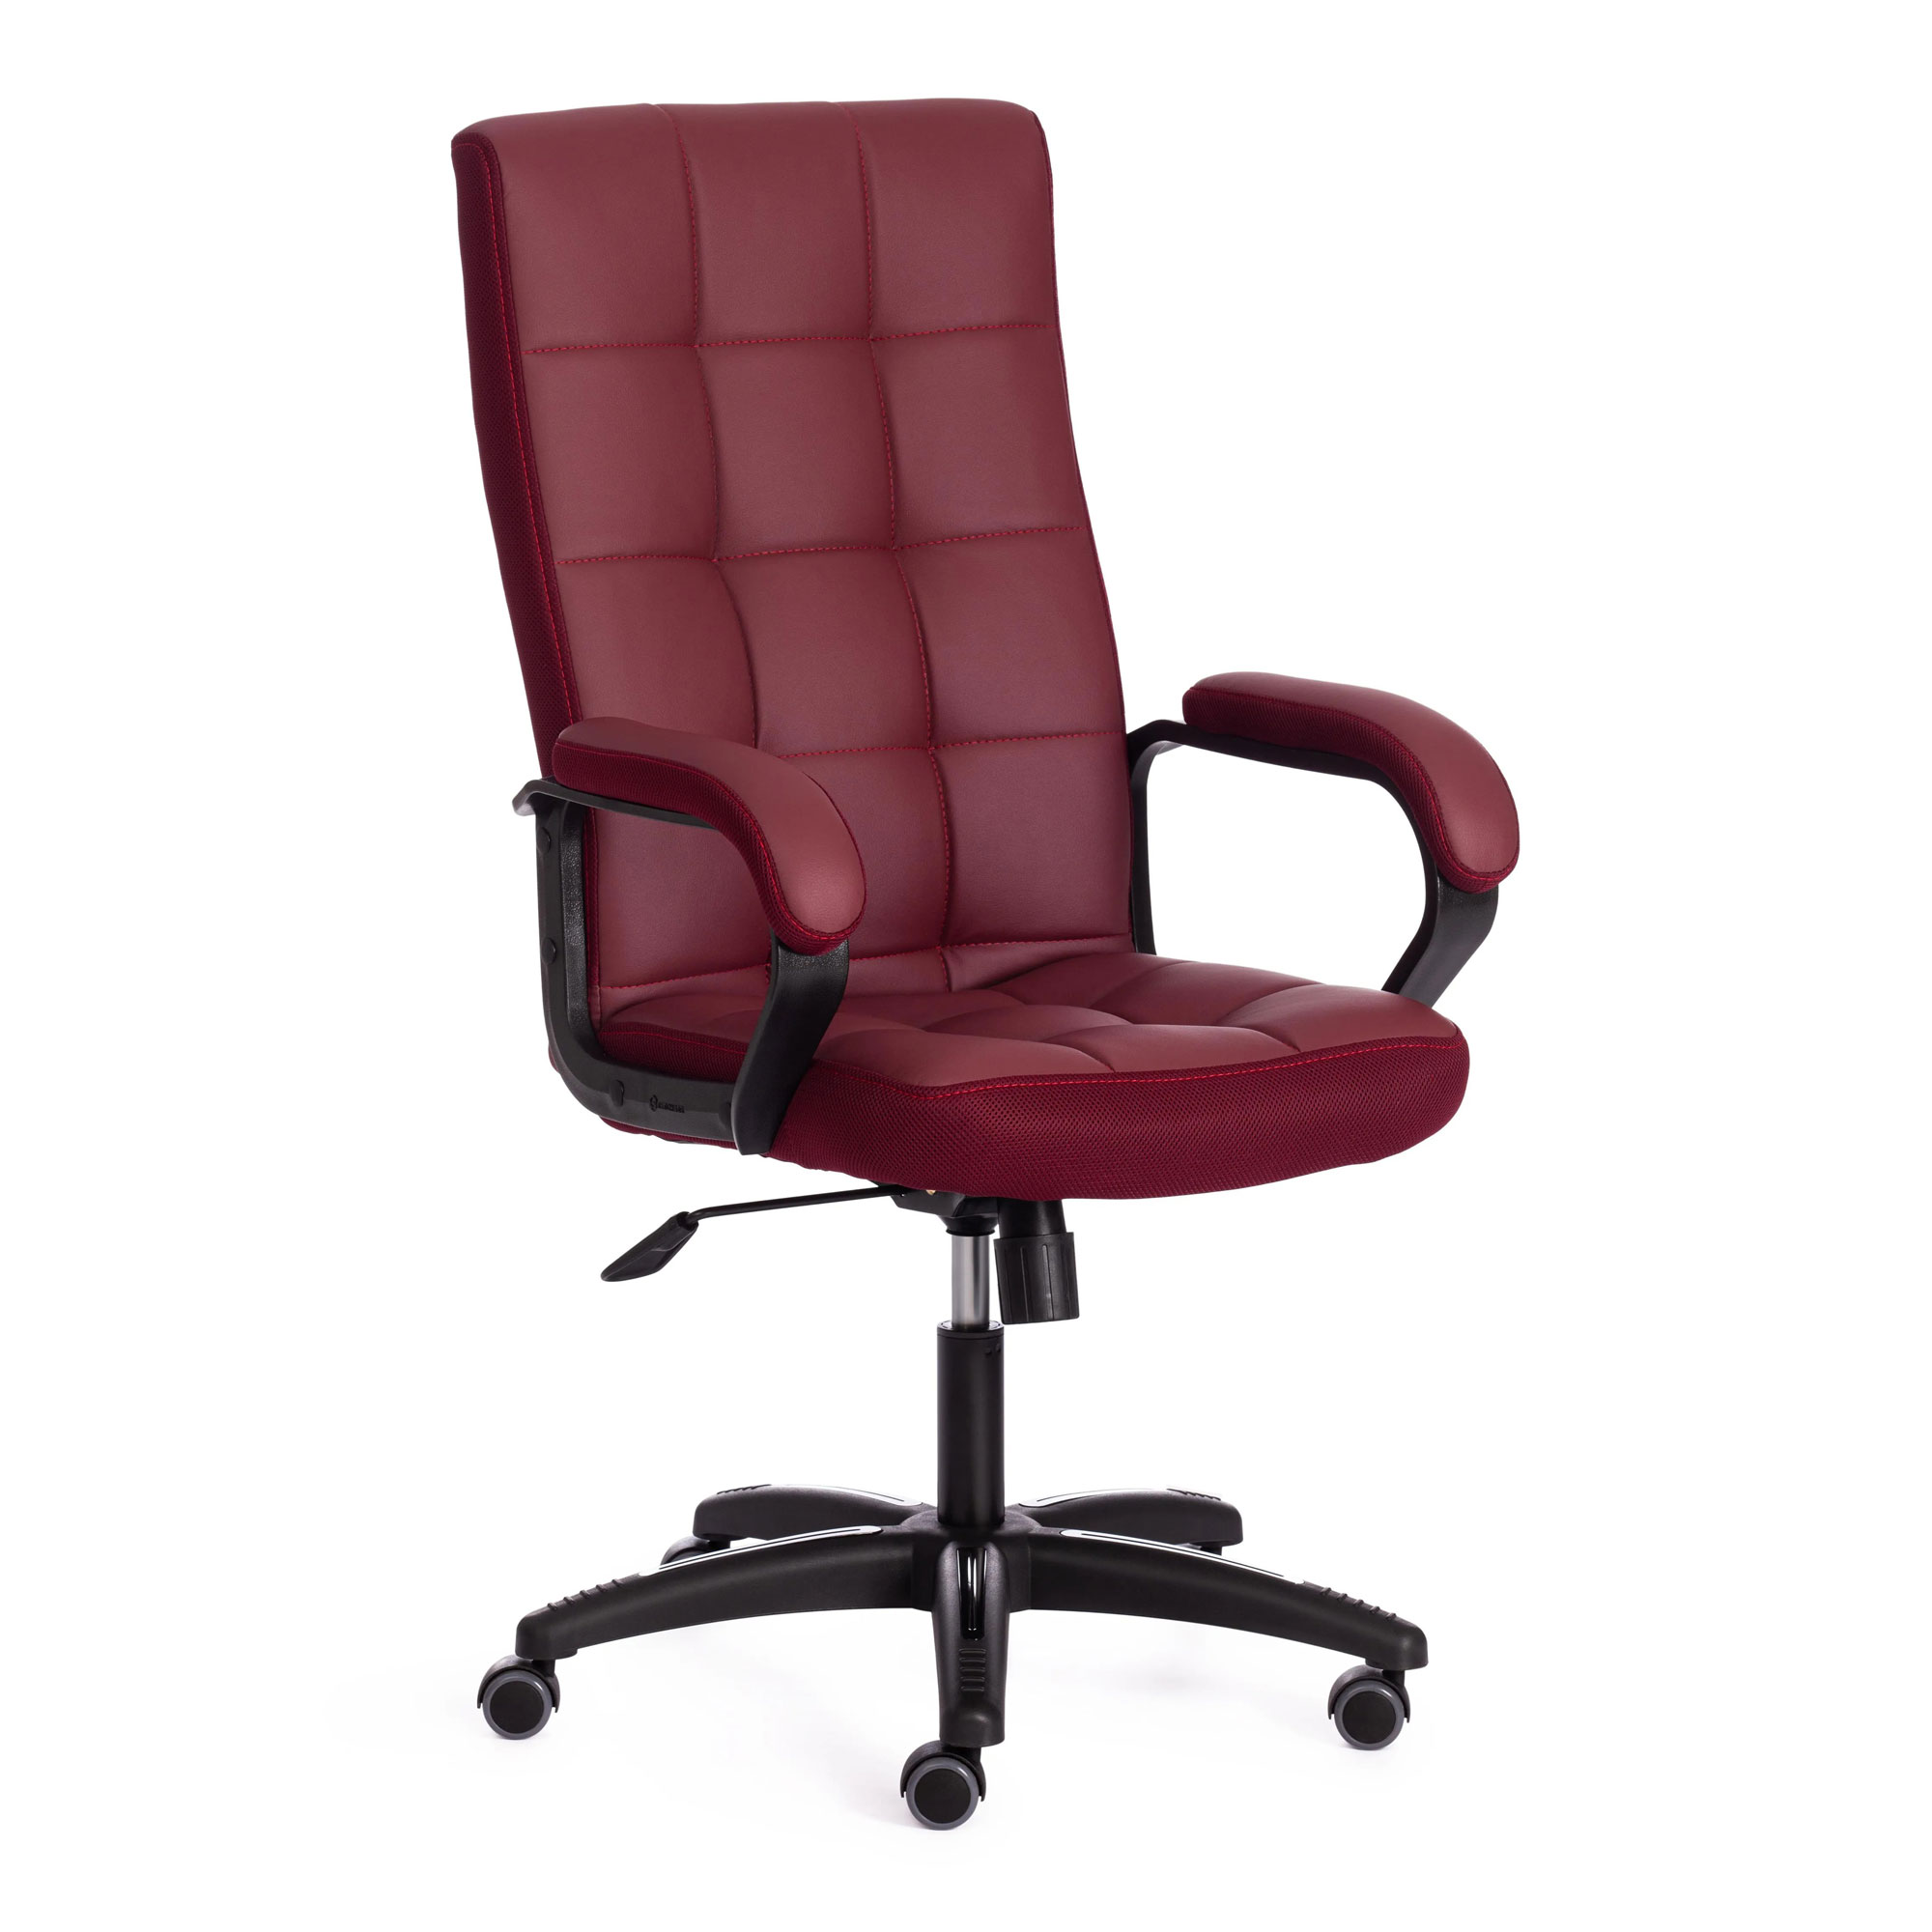 Кресло компьютерное TC искусственная кожа бордовое 61х47х126 см кресло компьютерное tc neo искусственная кожа чёрное с красным 64х49х122 см